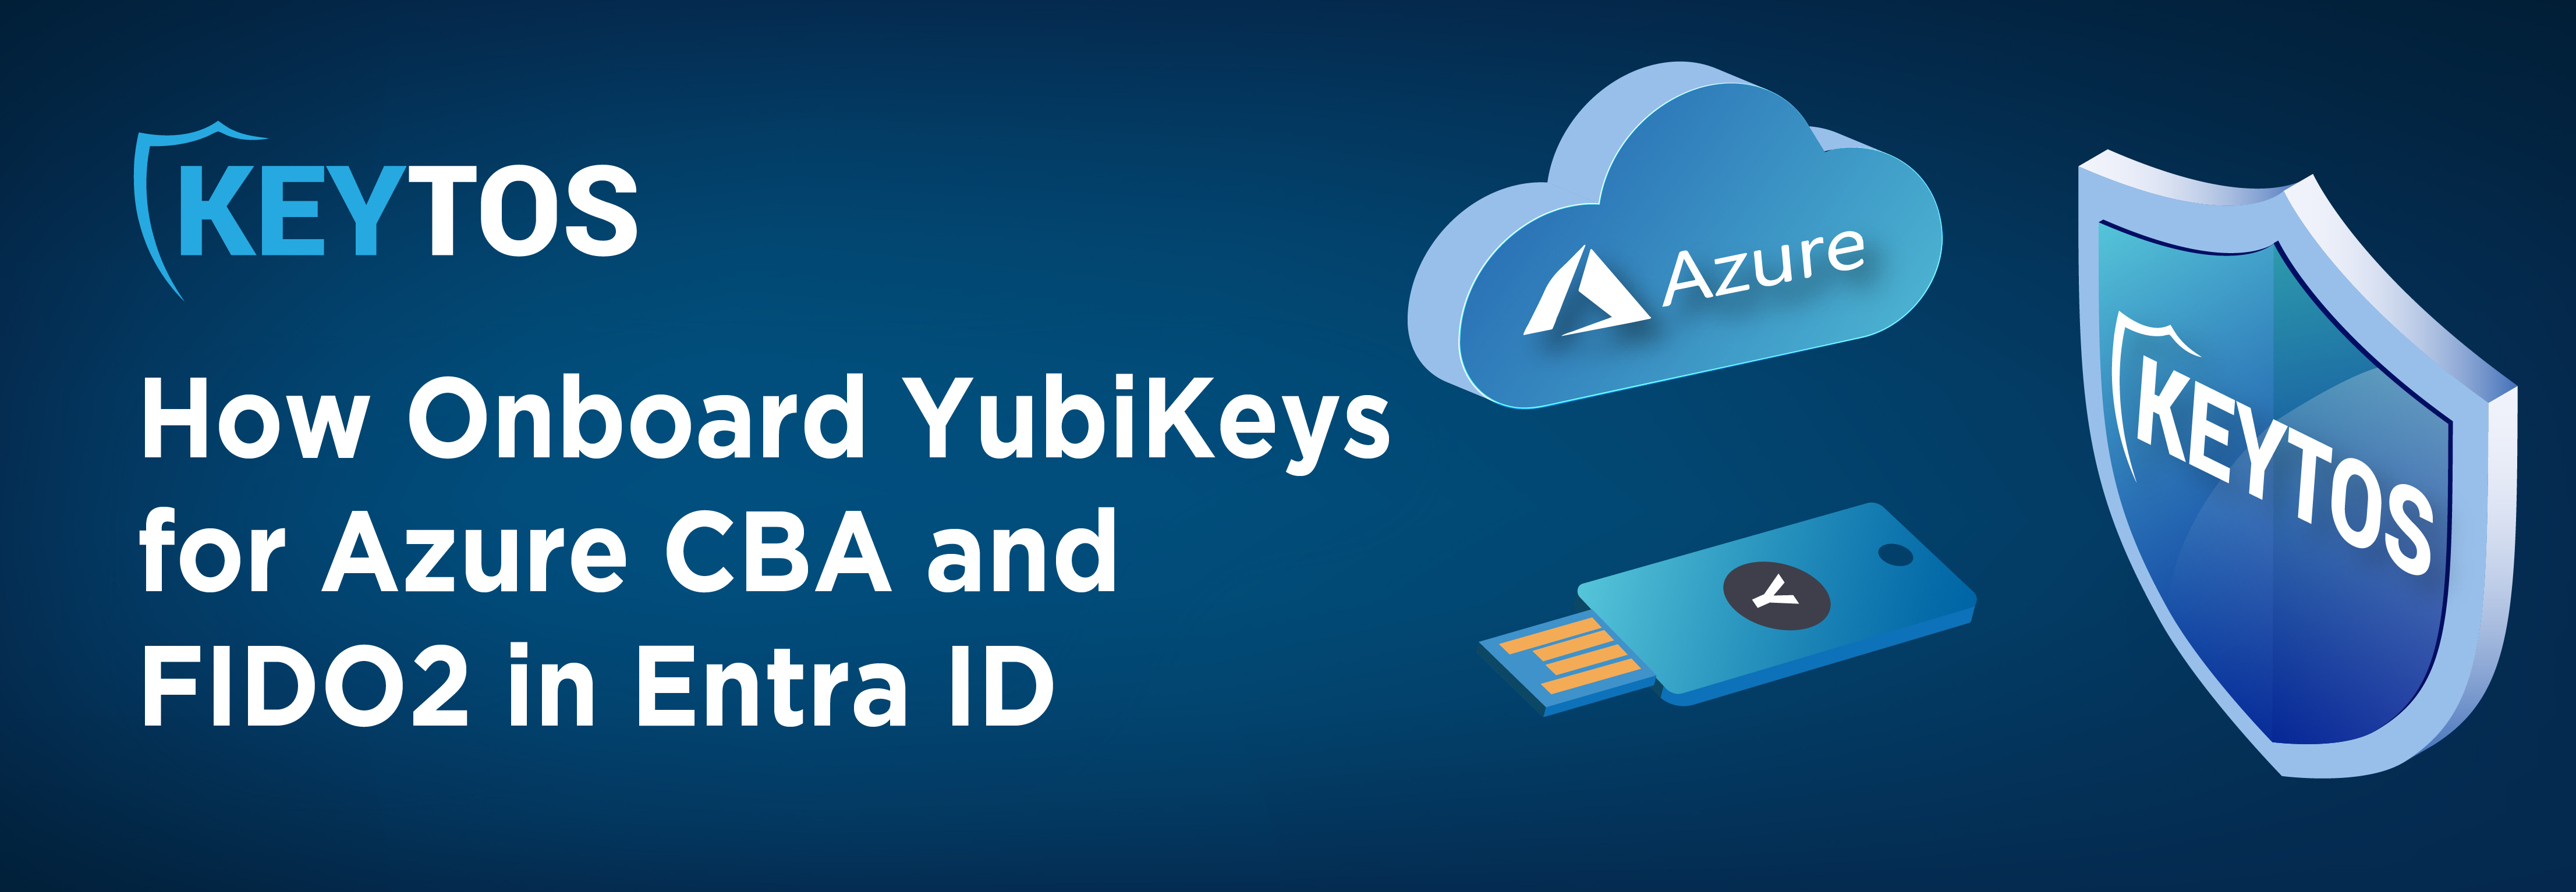 Cómo habilitar la autenticación sin contraseña en Azure AD y Entra ID con FIDO2 y Azure CBA usando Yubikeys